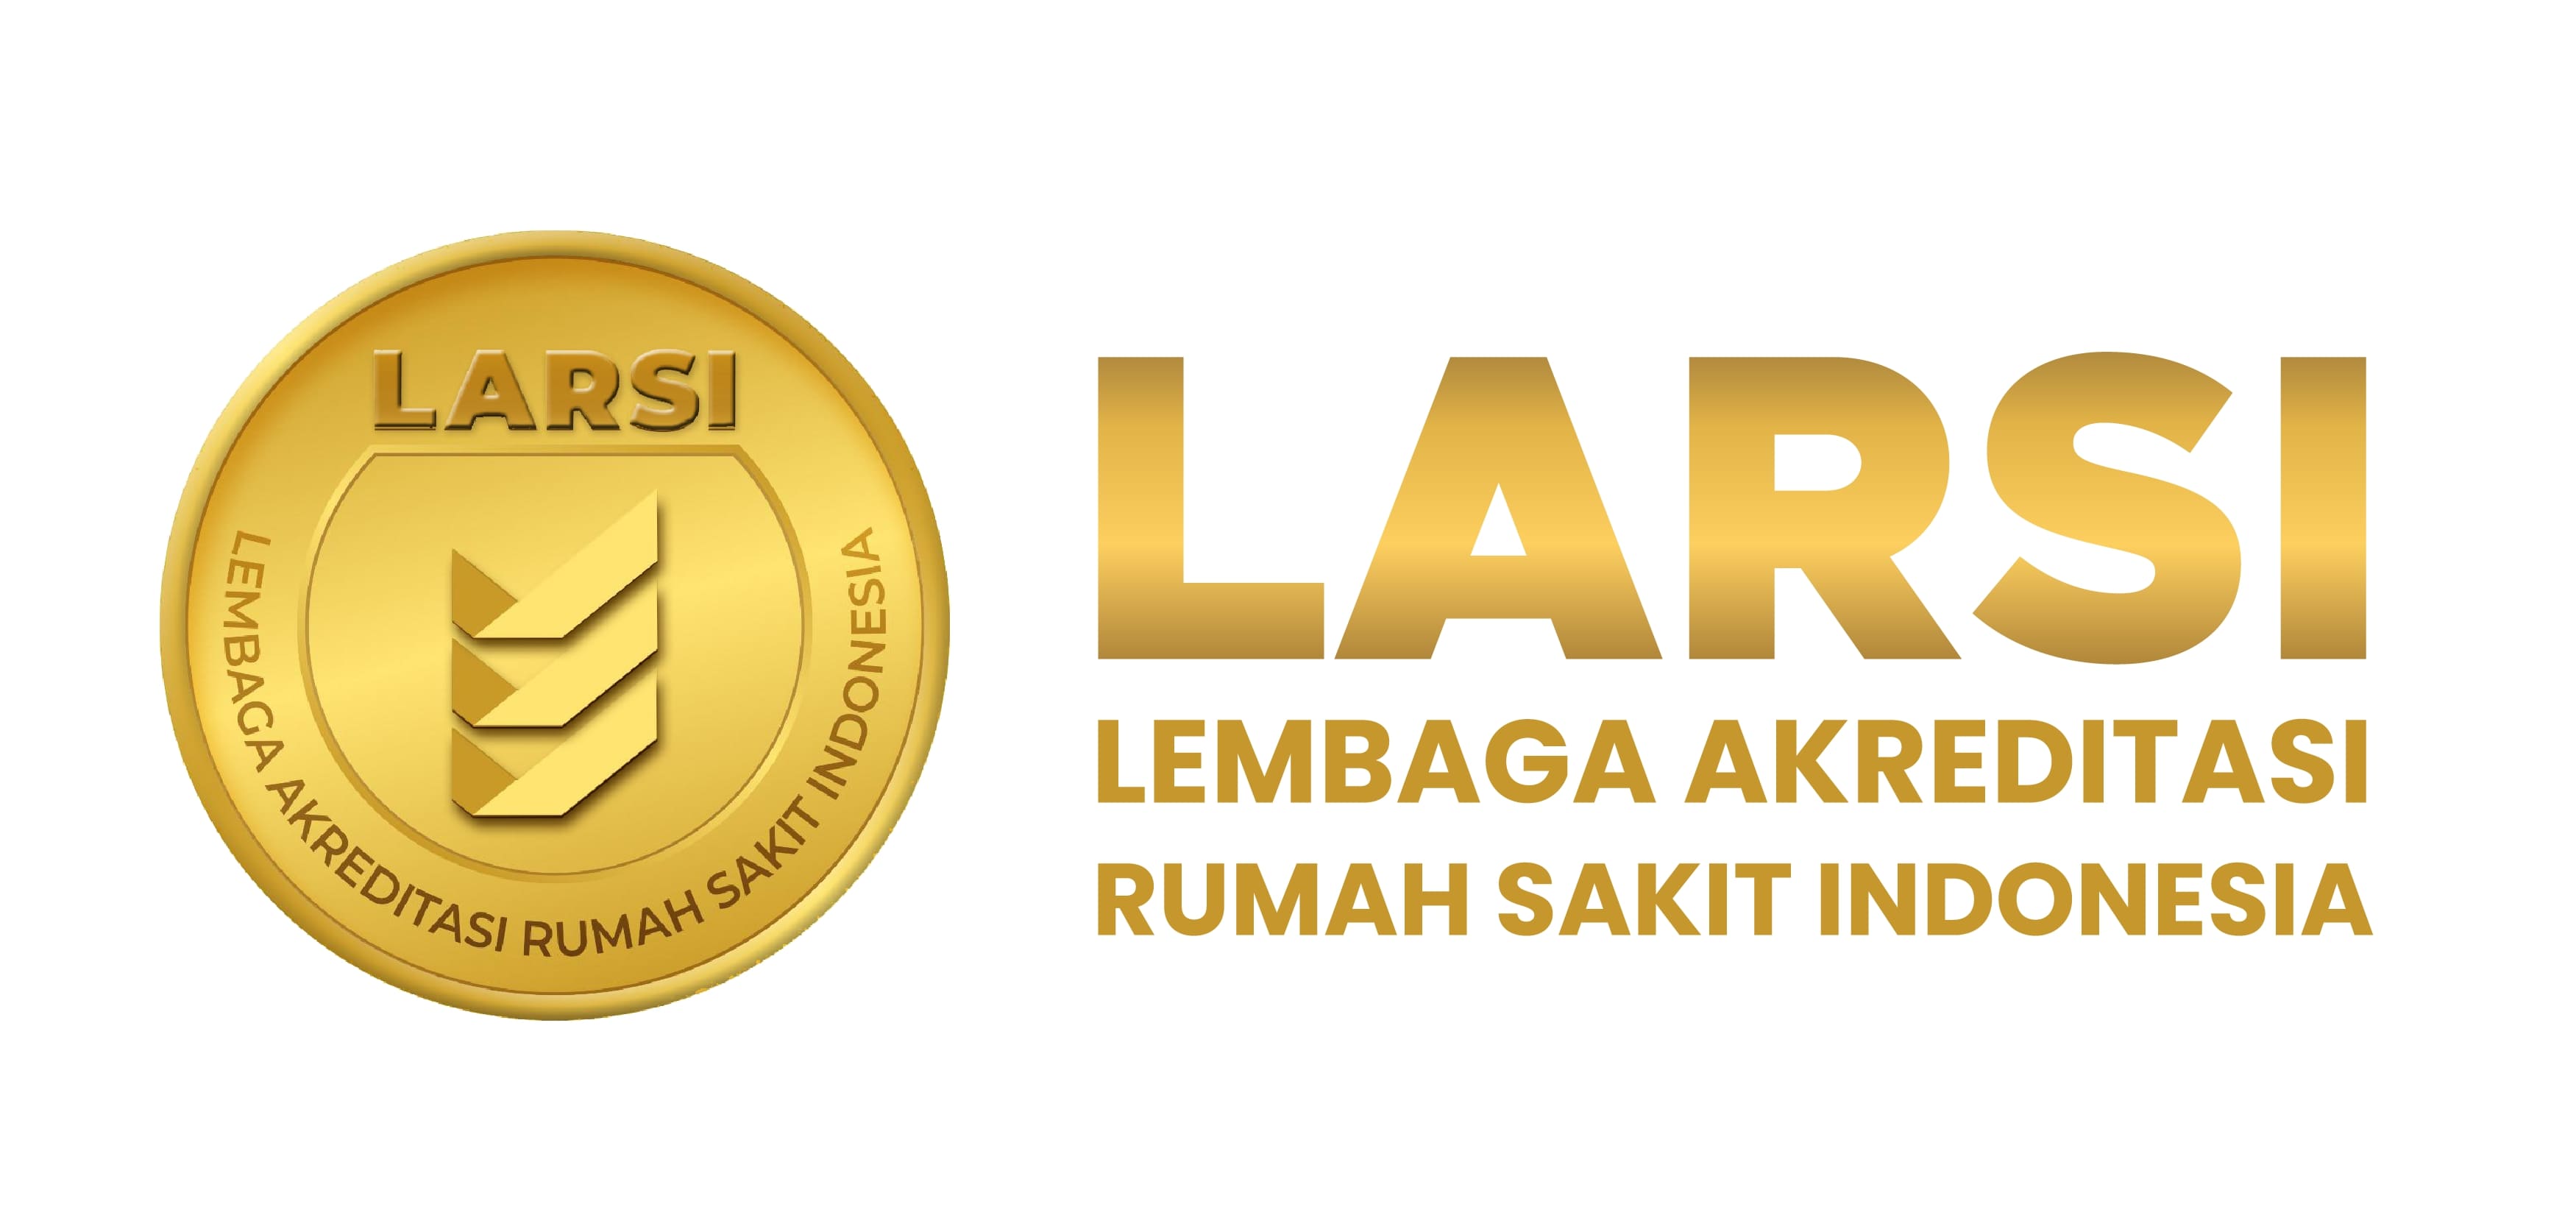 LARSI - Lembaga Akreditasi Rumah Sakit Indonesia